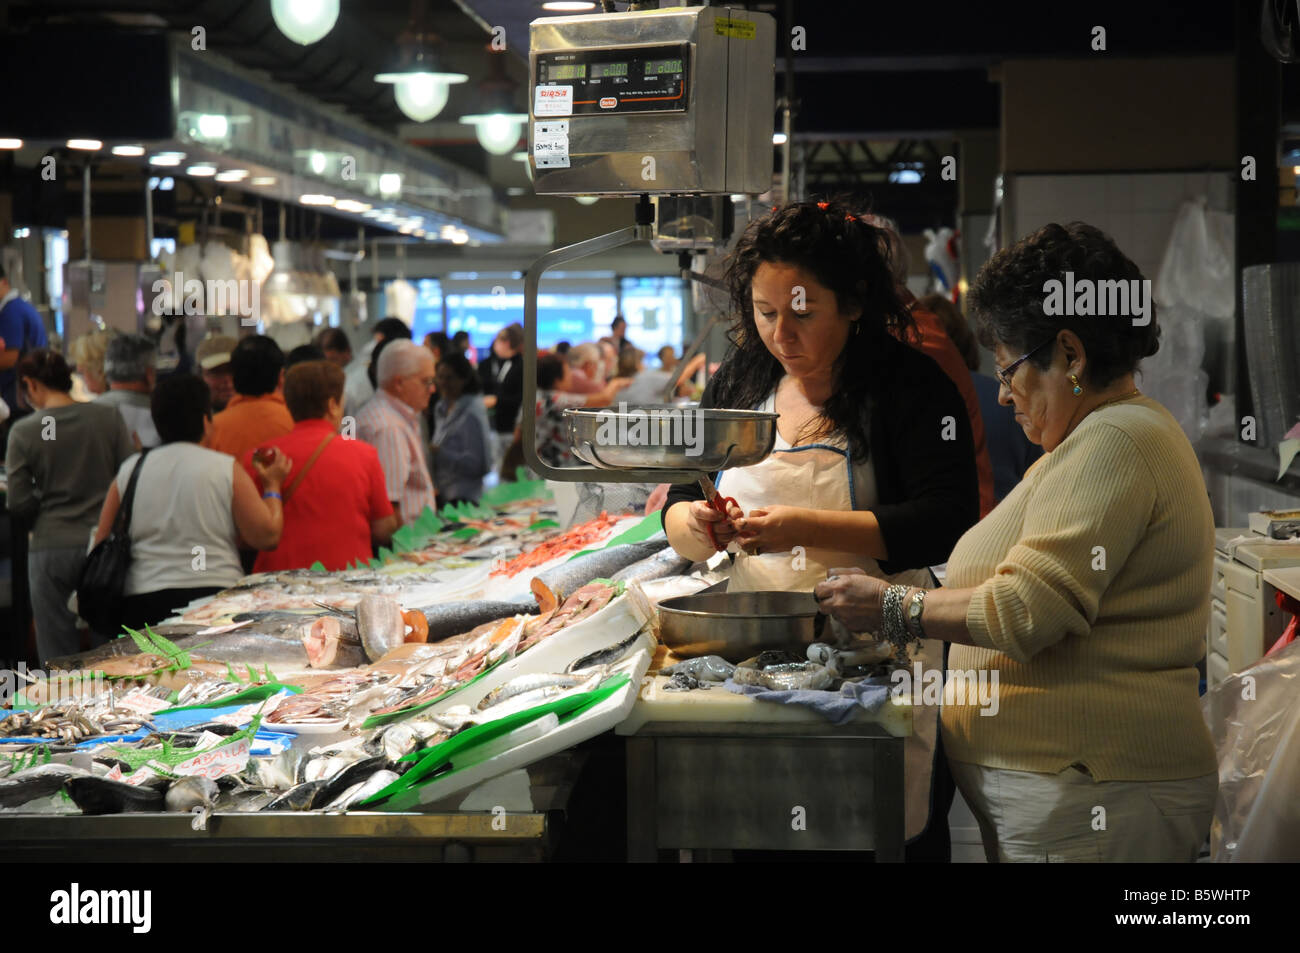 Two women prepare fish at the market in Palma, Mallorca Stock Photo